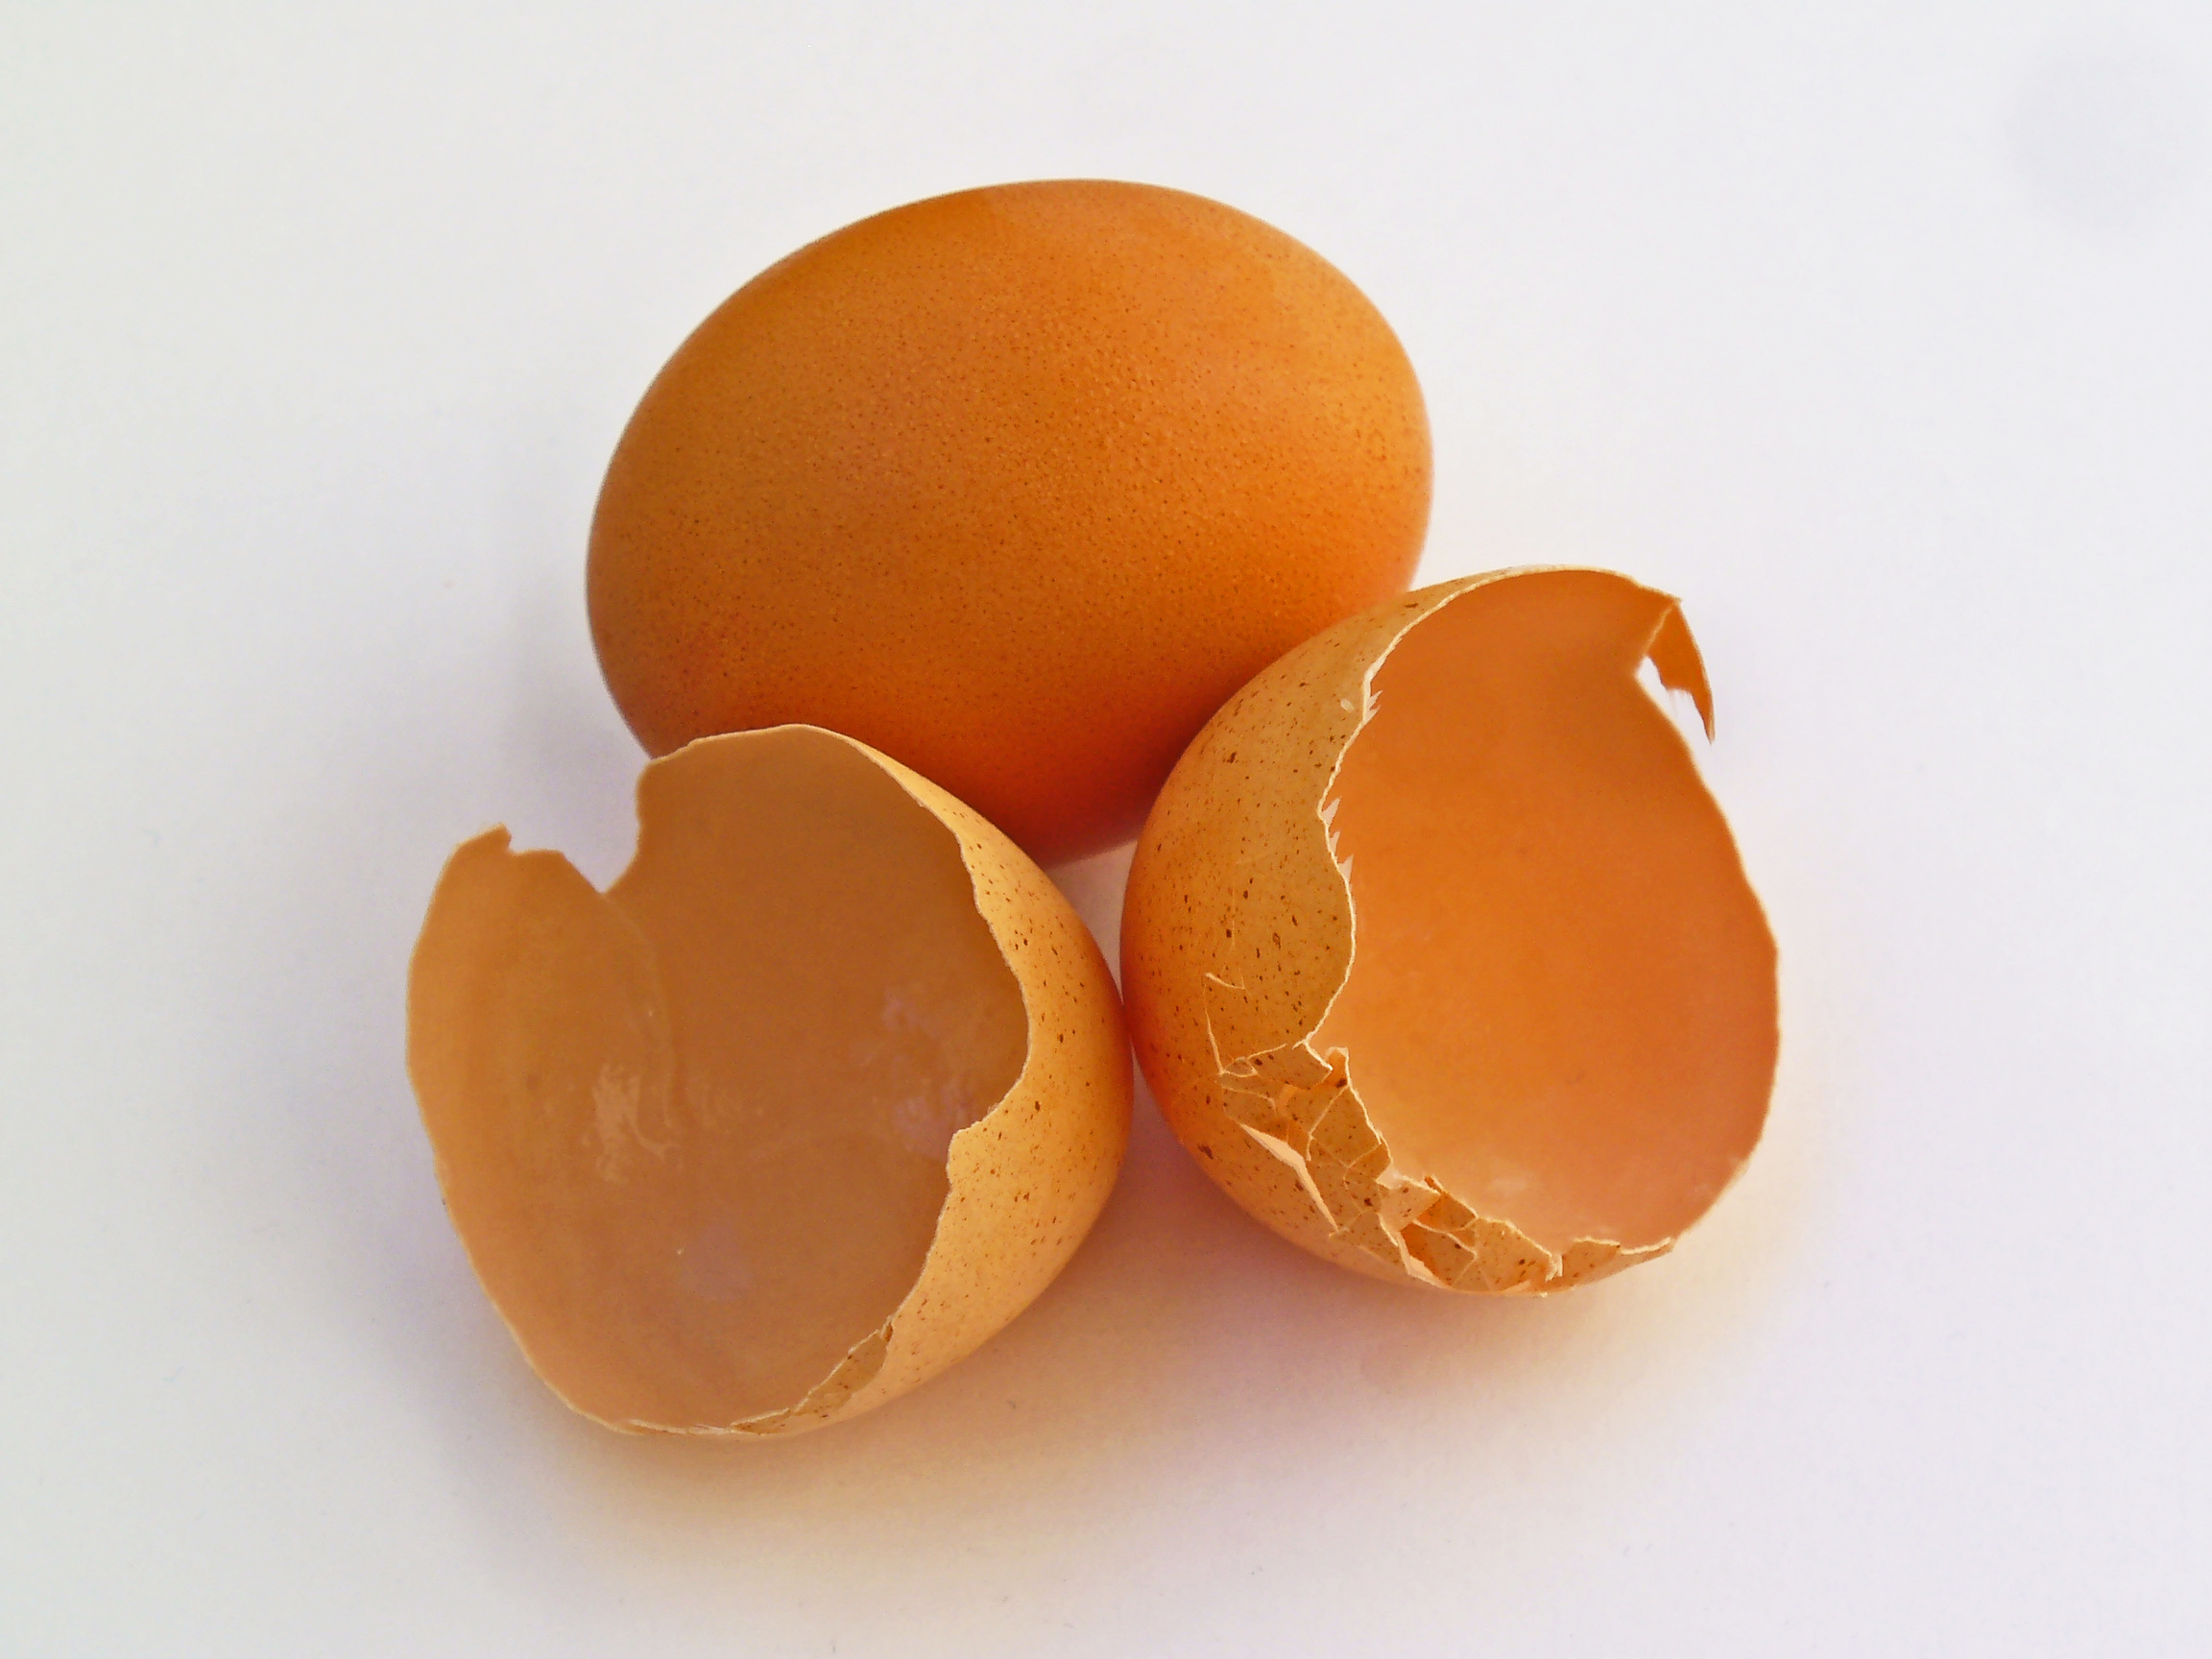 Eggshell membrane